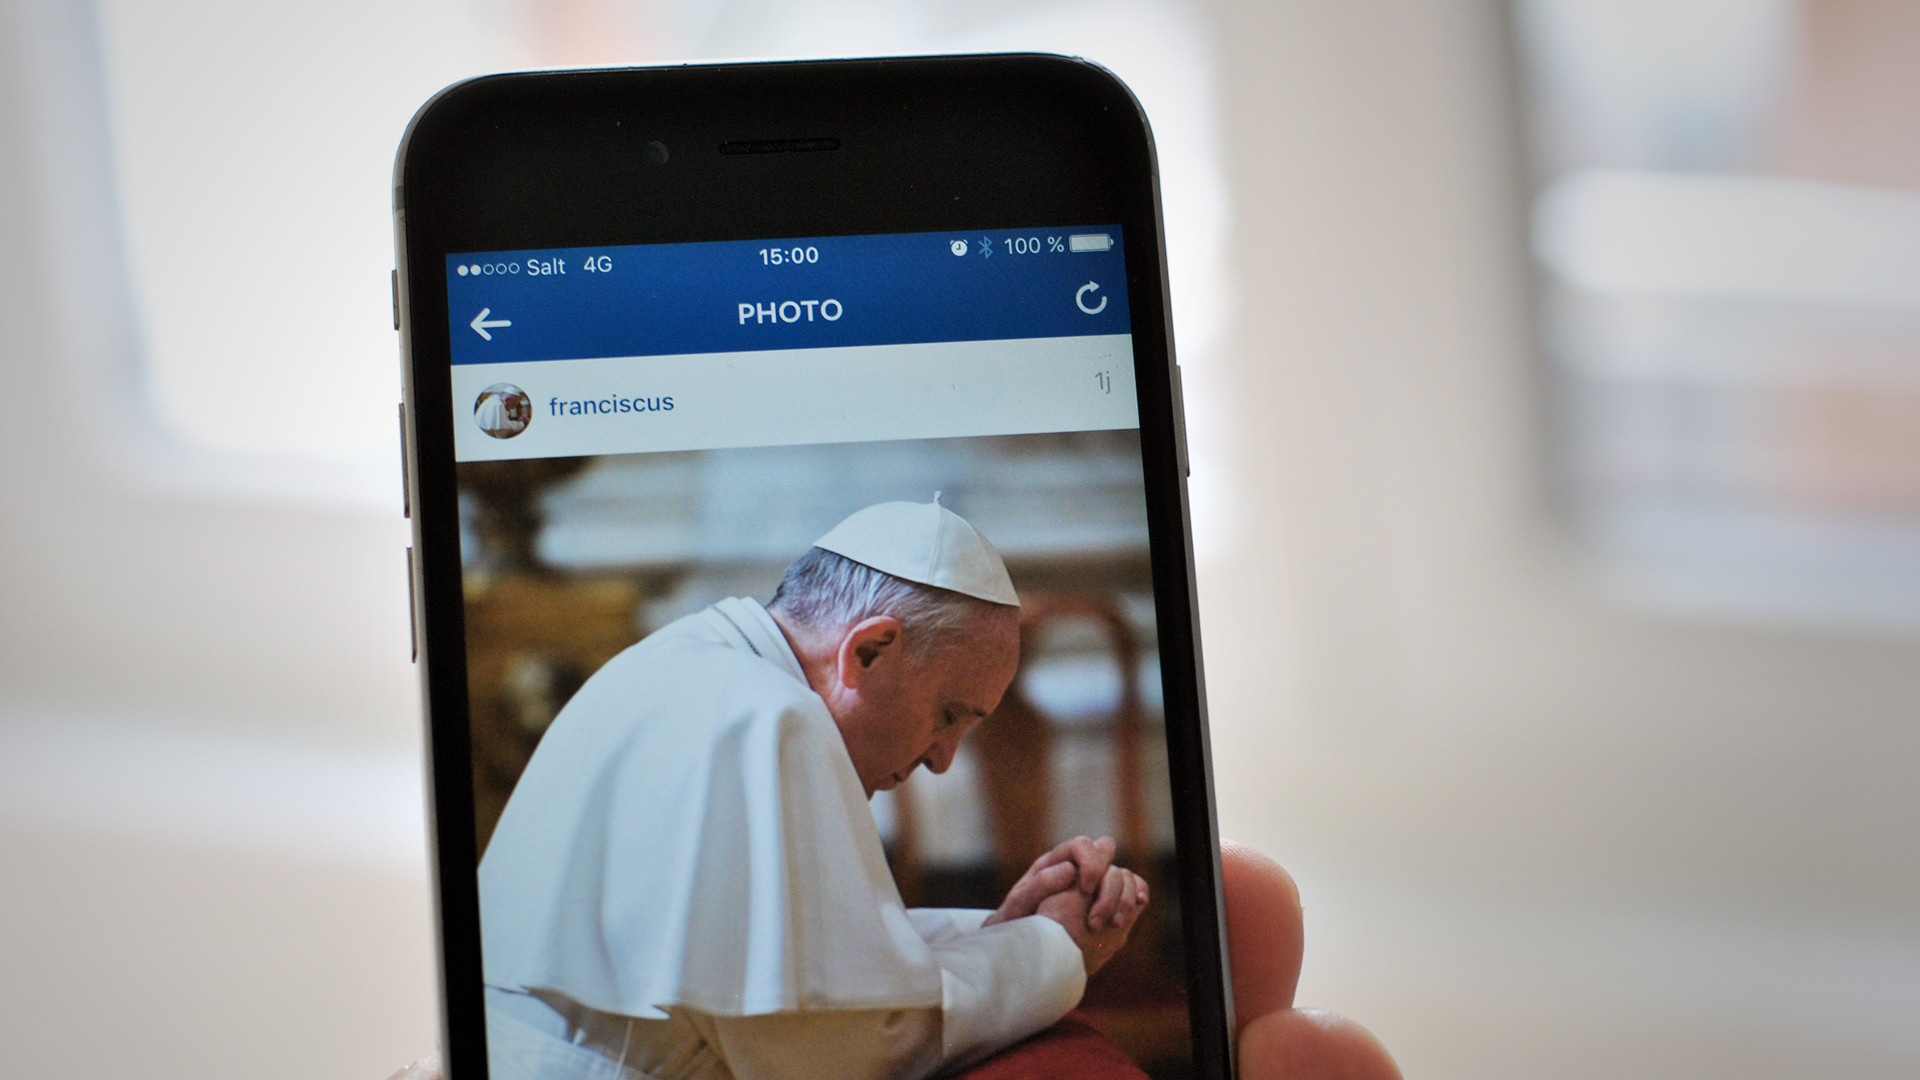 Le compte Instagram du pape François (Photo: Pierre Pistoletti)